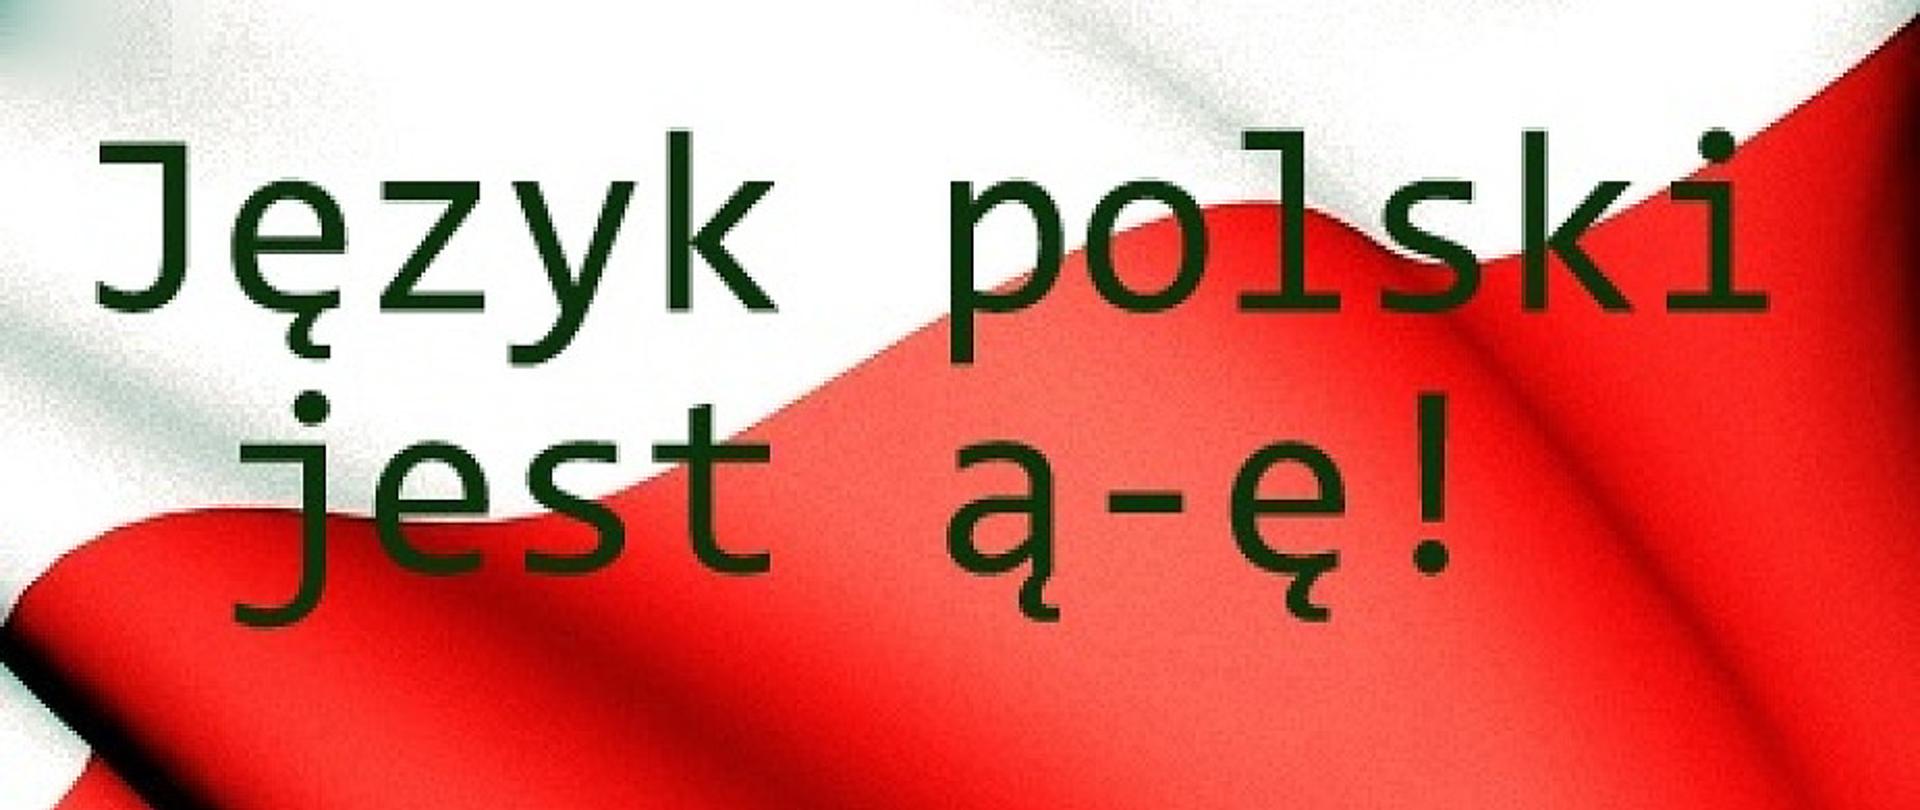 jezyk-polski-jest-a-e-bronmy-jezyka-polskiego